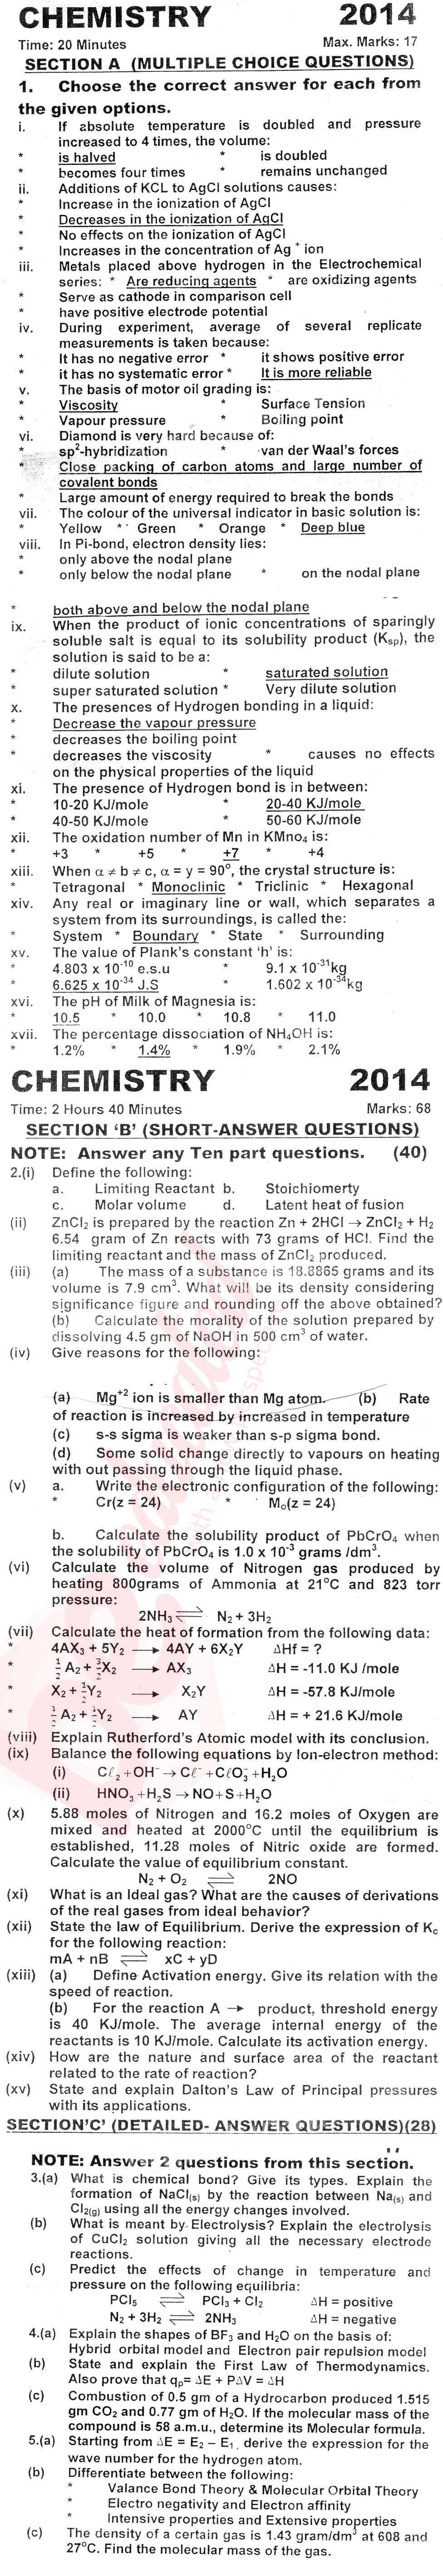 Chemistry FSC Part 1 Past Paper Group 1 KPBTE 2014